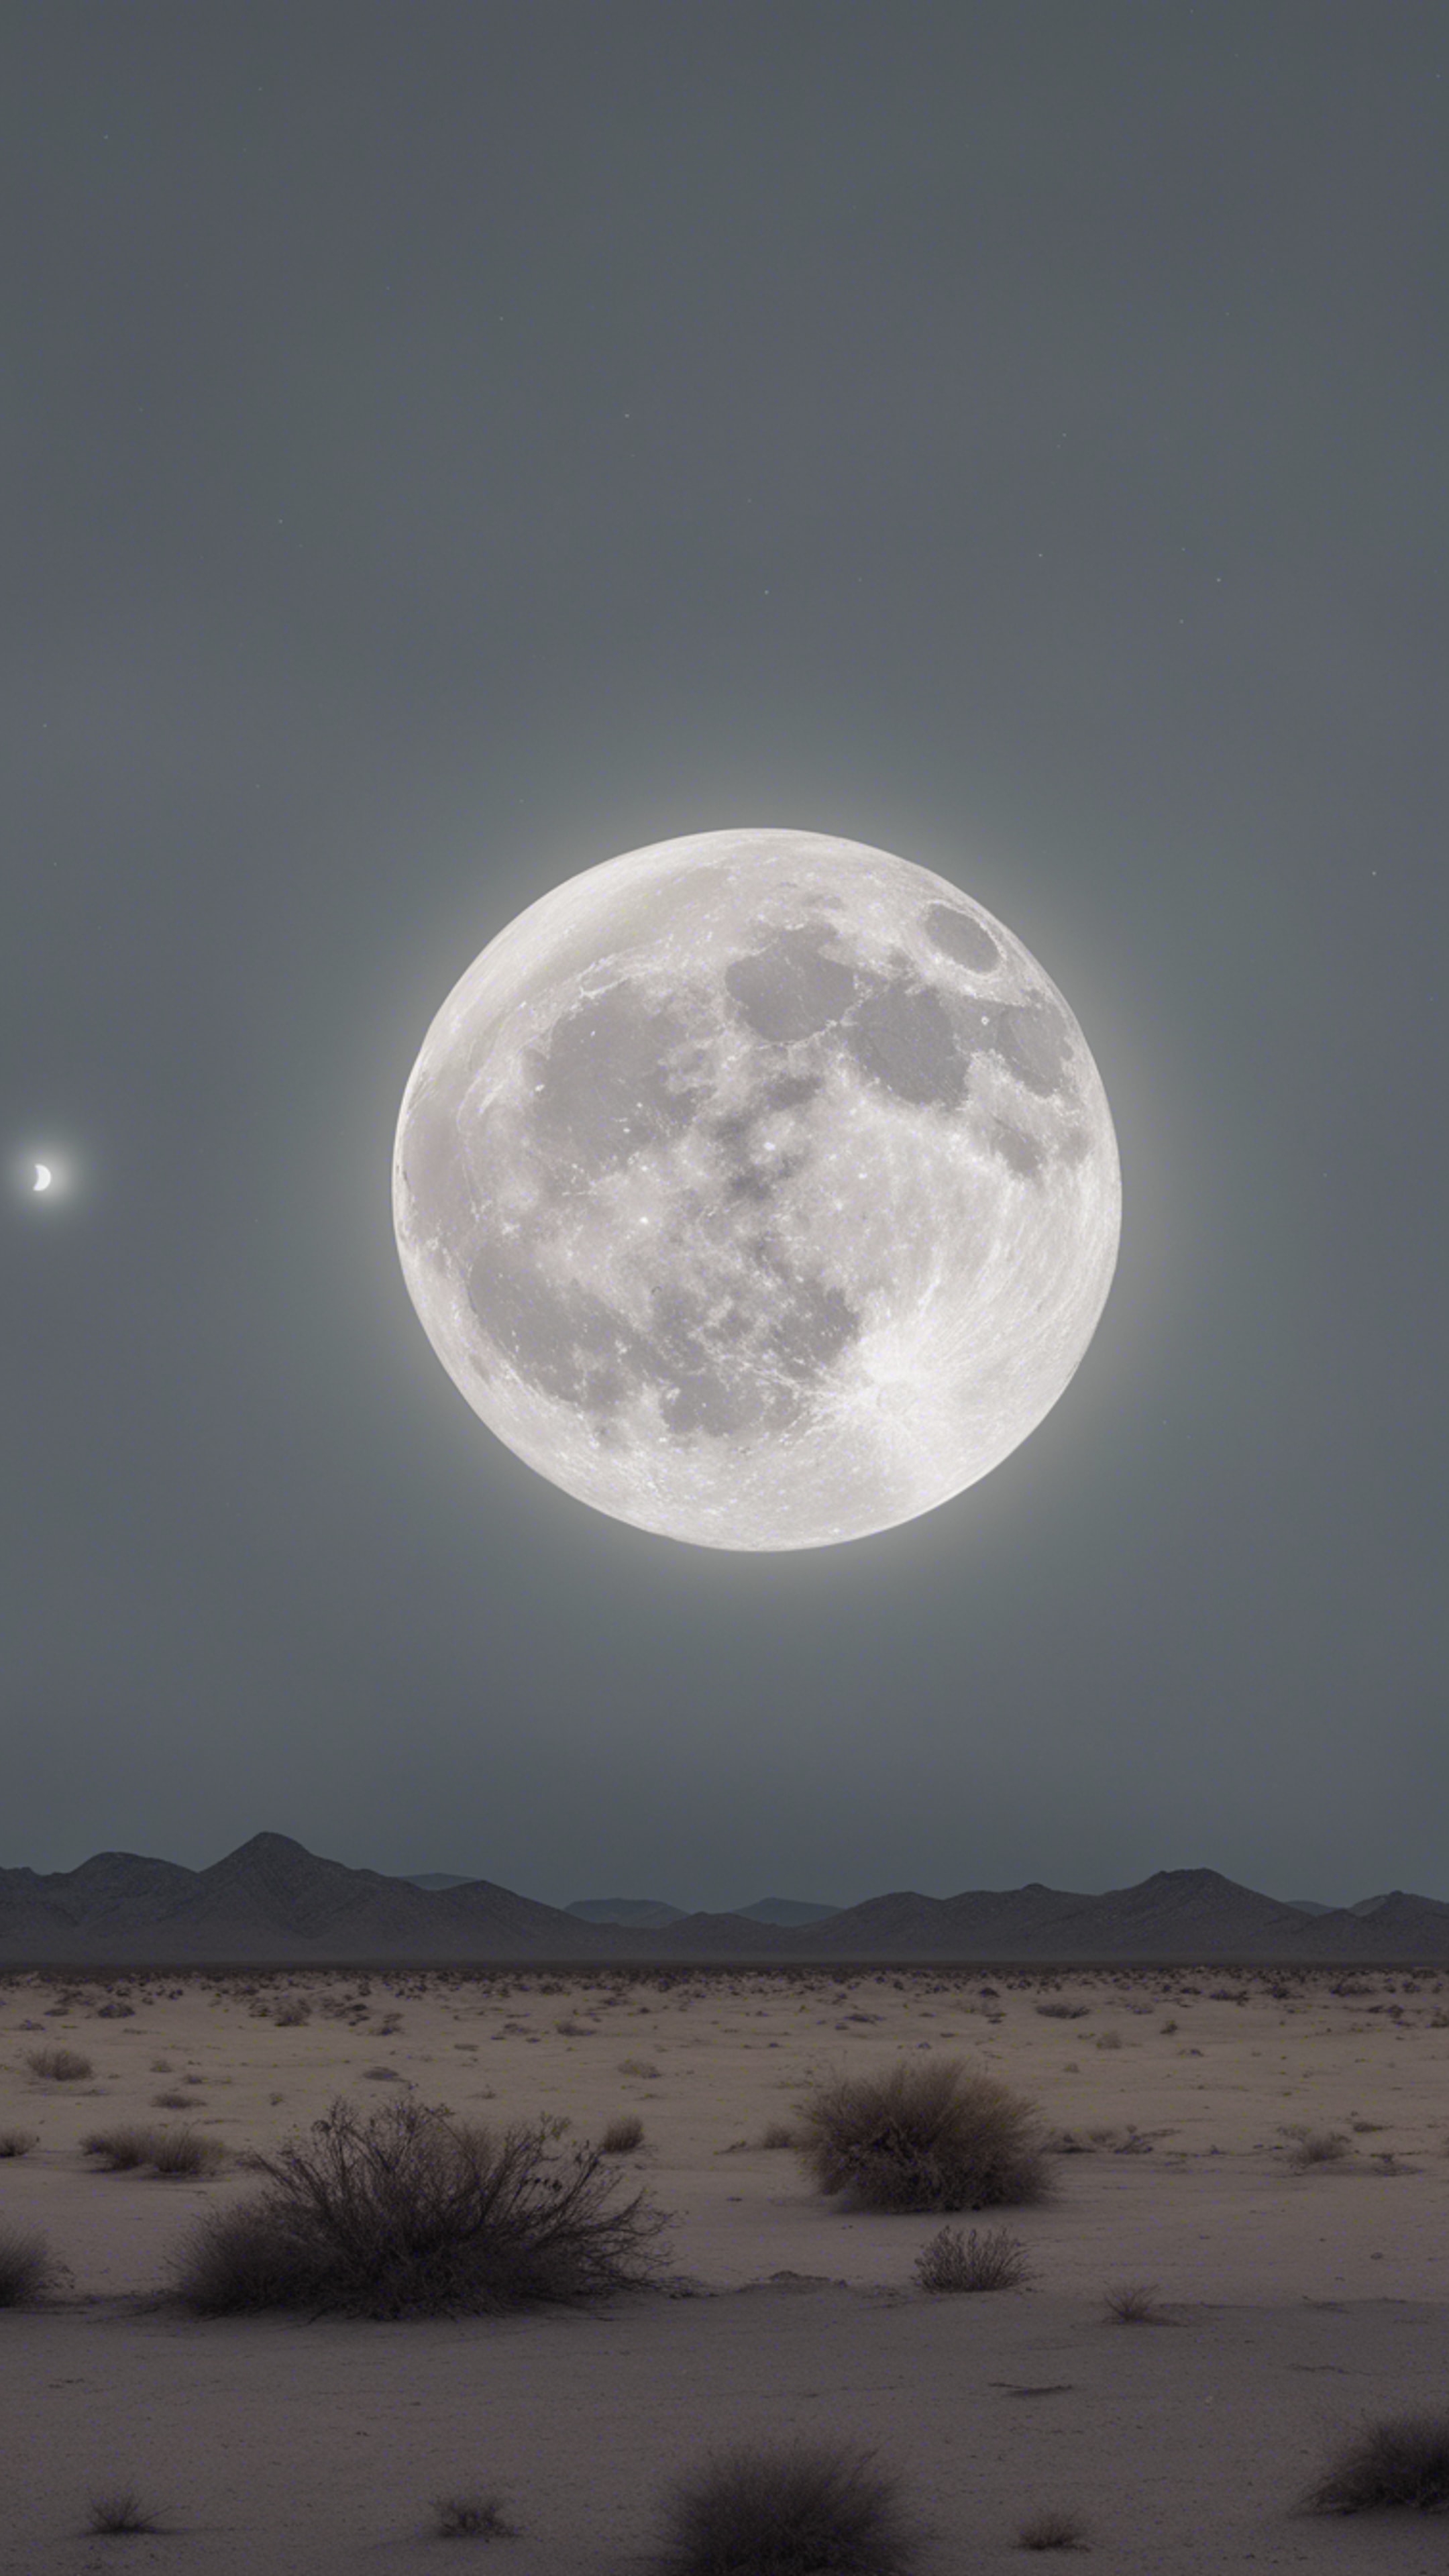 An eerie full moon casting a light gray hue over a desolate desert landscape. Fond d'écran[b219b4d700dc4cdd8b88]